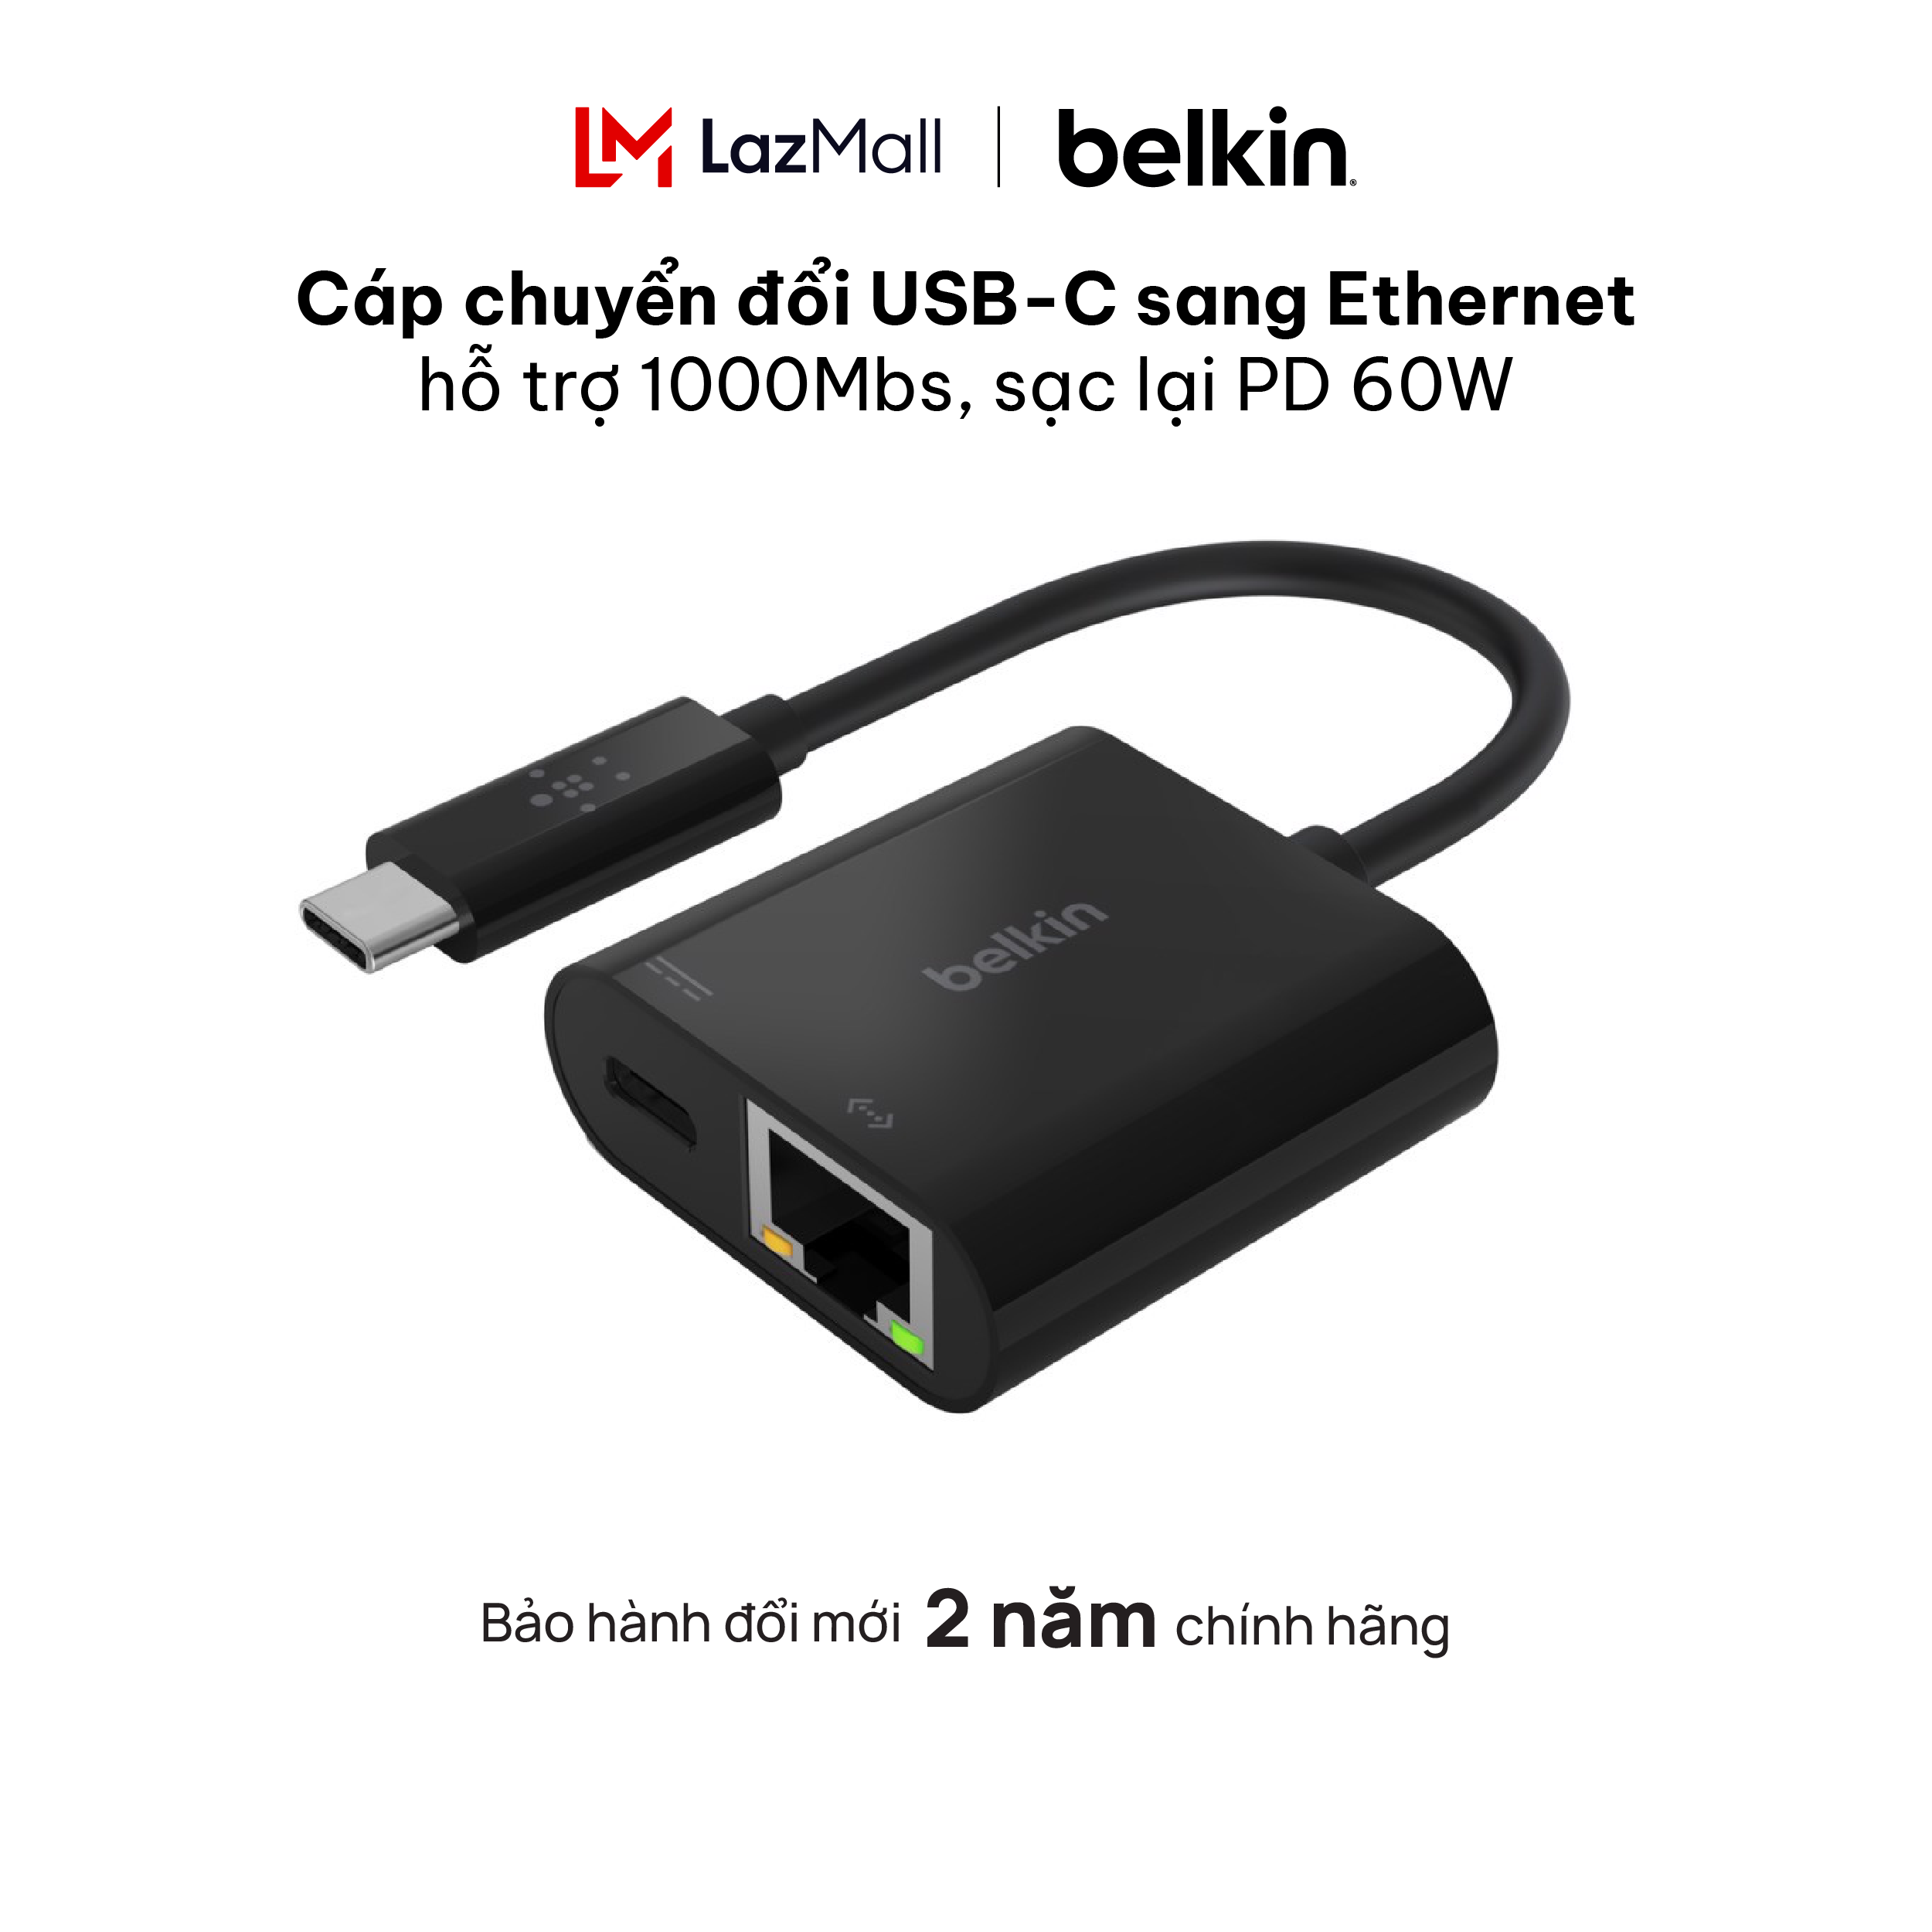 Cáp chuyển đổi USB-C sang Ethernet Belkin hỗ trợ 1000Mbs, sạc lại PD 60W,